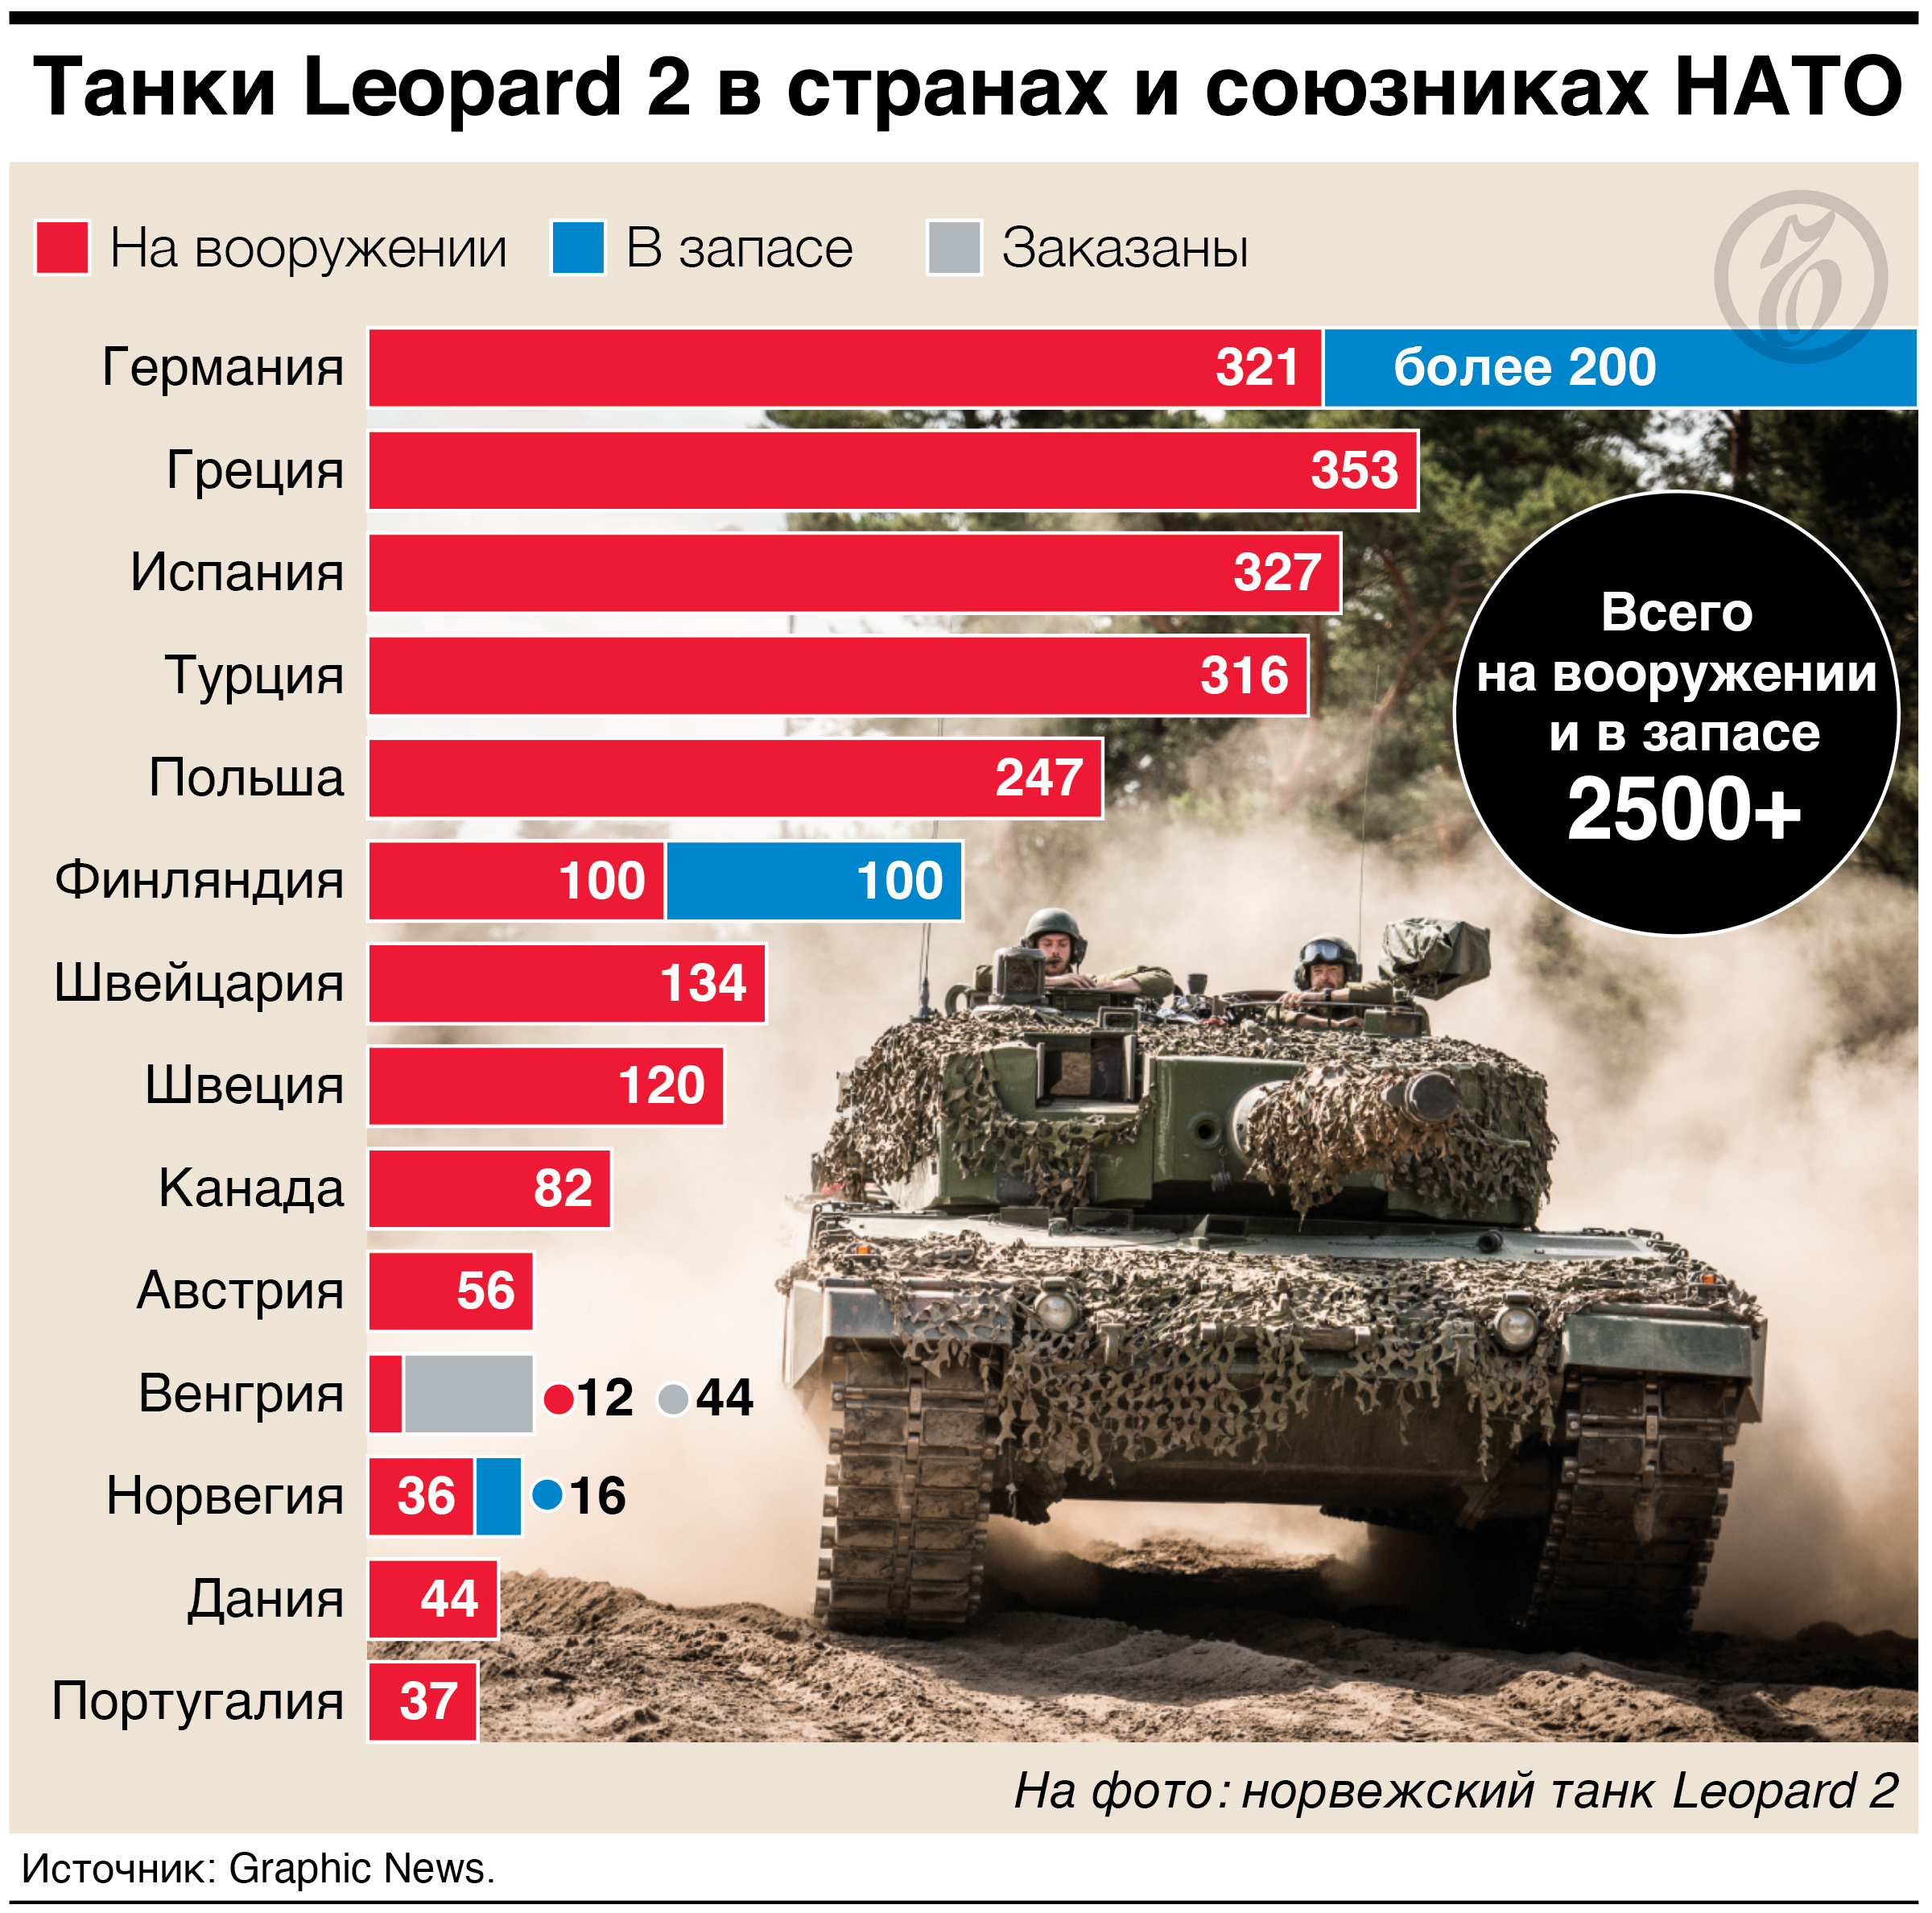 У каких стран на вооружении есть Leopard 2